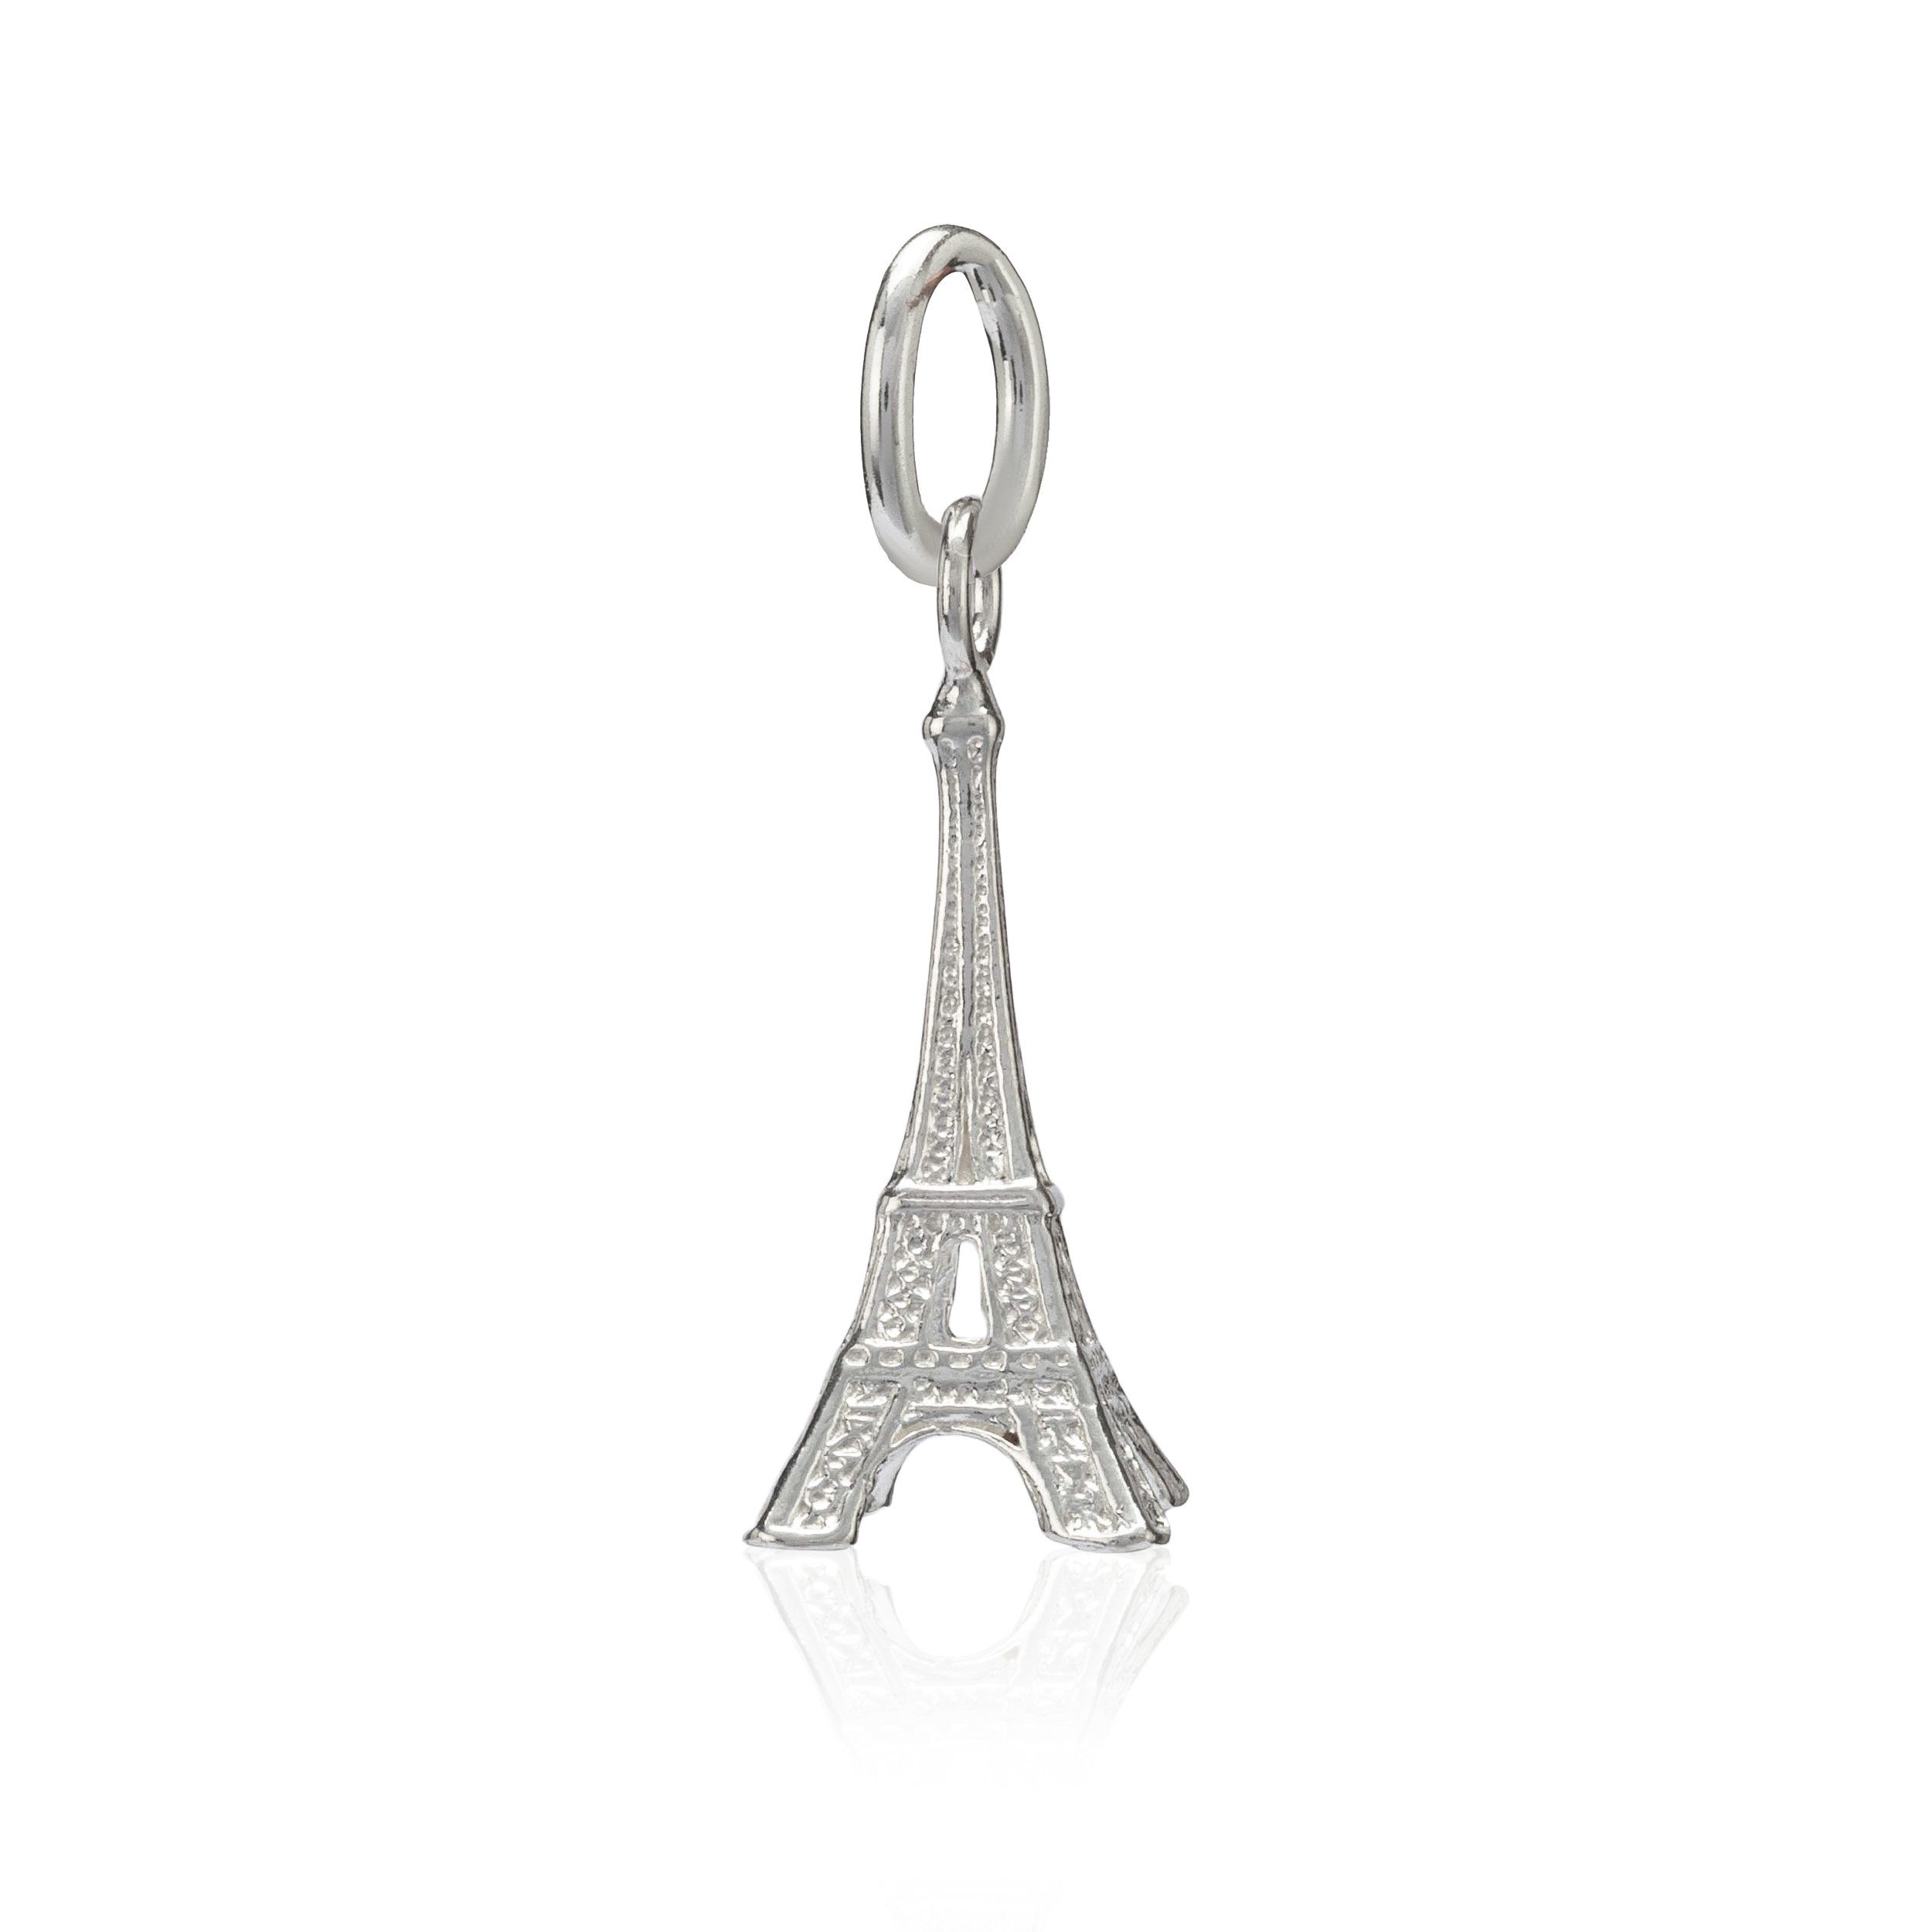 NKlaus Kettenanhänger Damen Kettenanhänger Eiffelturm 925 Silber 19x9mm, 925 Sterling Silber Silberschmuck für Damen